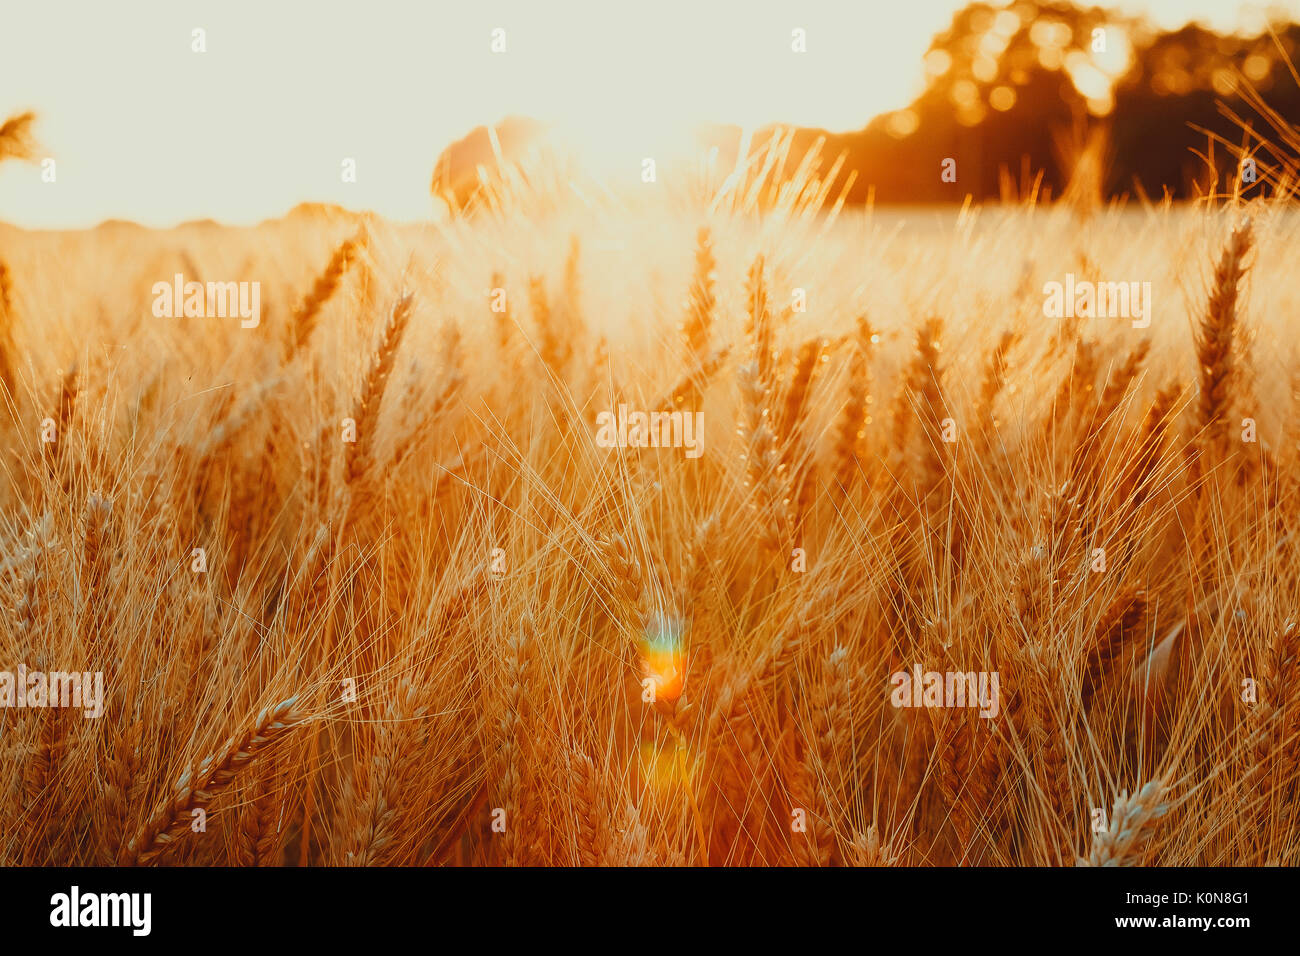 В тишине полей наливаются золотом колосья. Золотая пшеница на закате. Закат солнца с золотистыми колосьями. Картина Золотая пшеница на переднем плане. Пшеничное поле фон для предметной съемки.